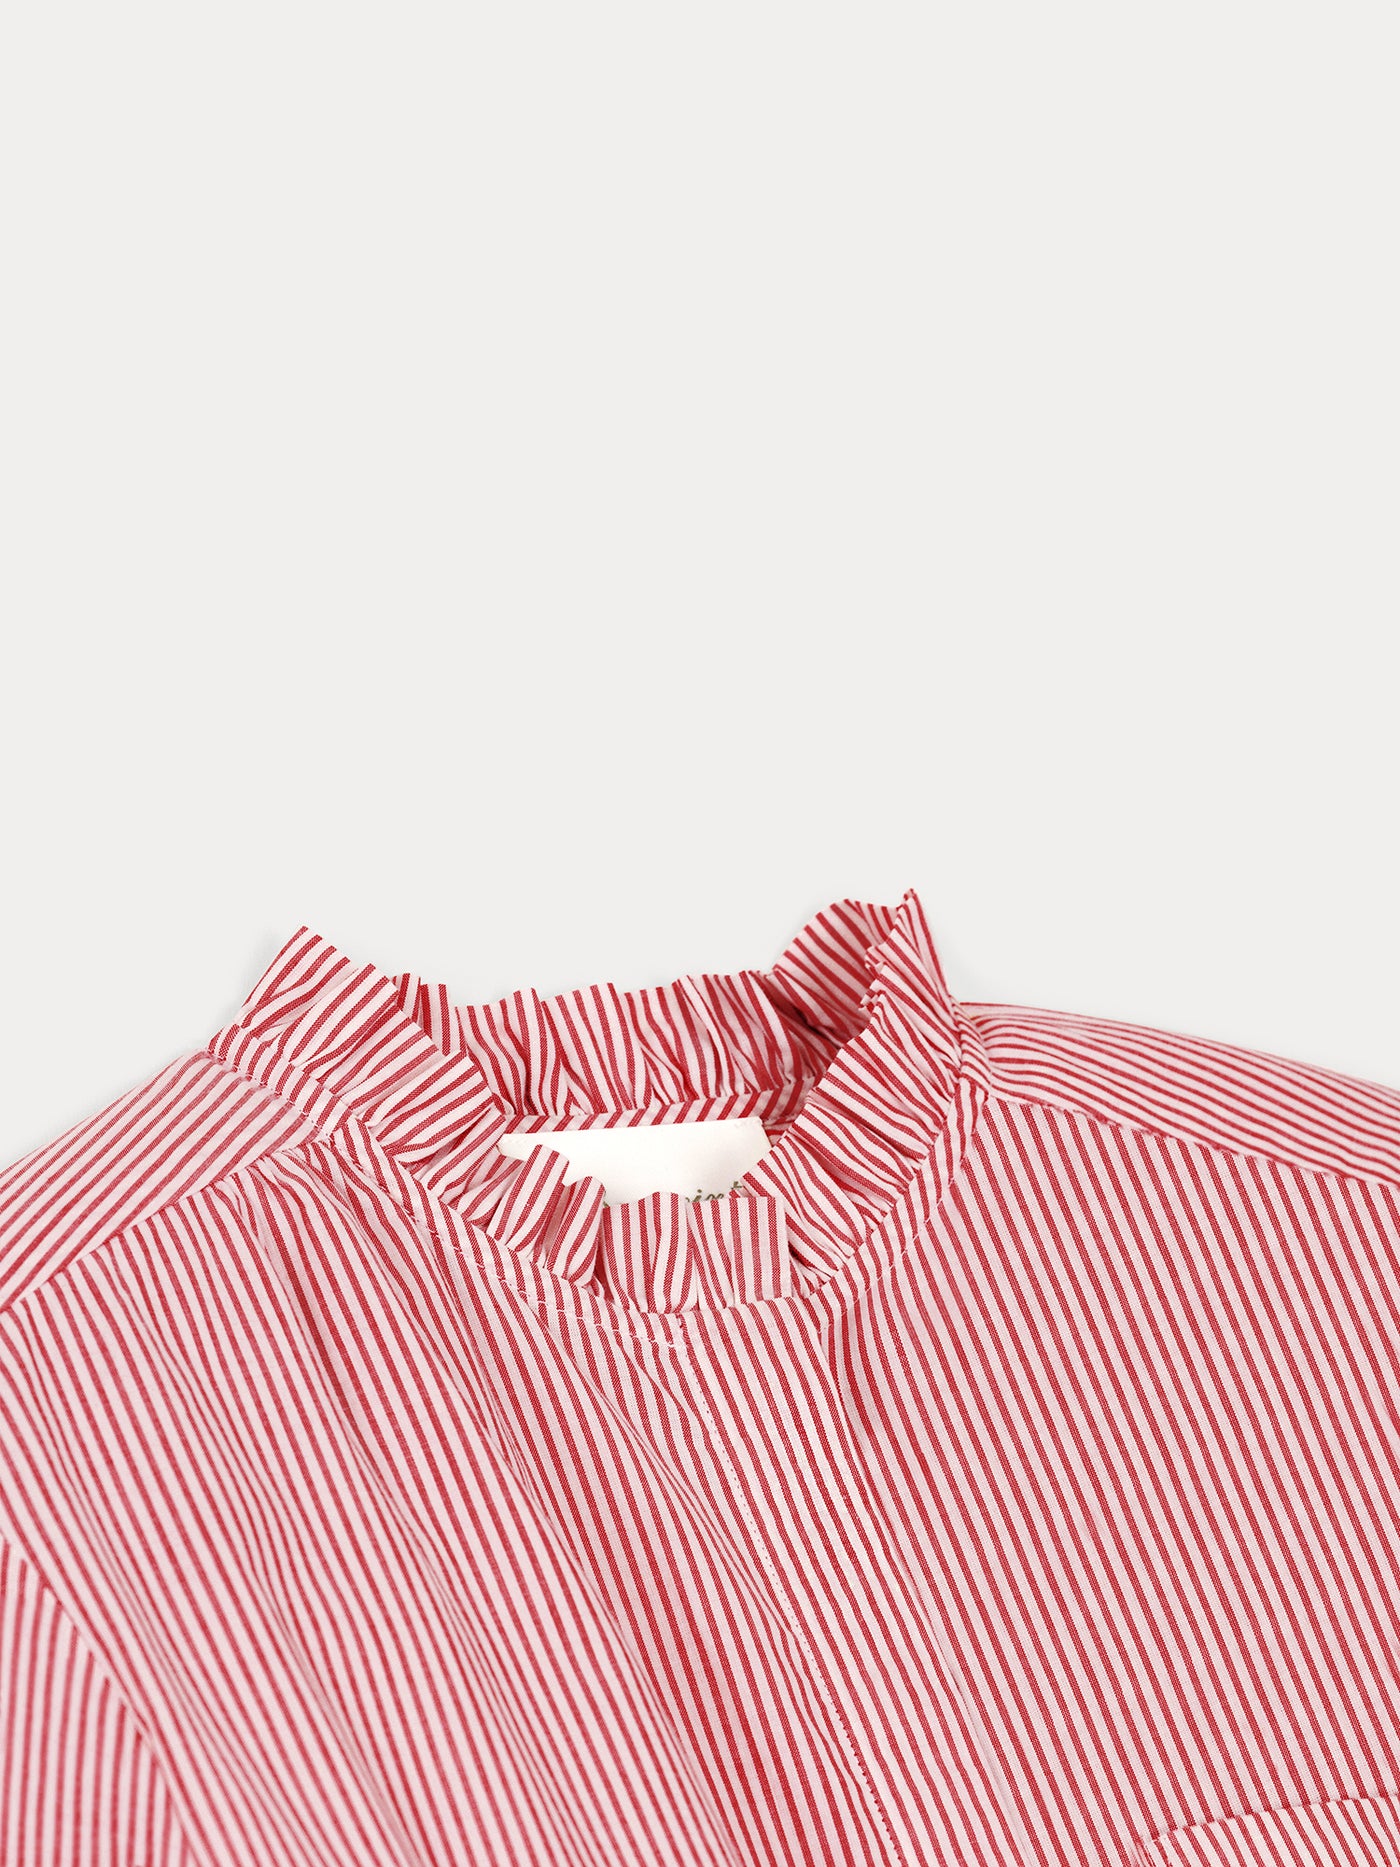 Chemise en coton rayée rouge et blanc